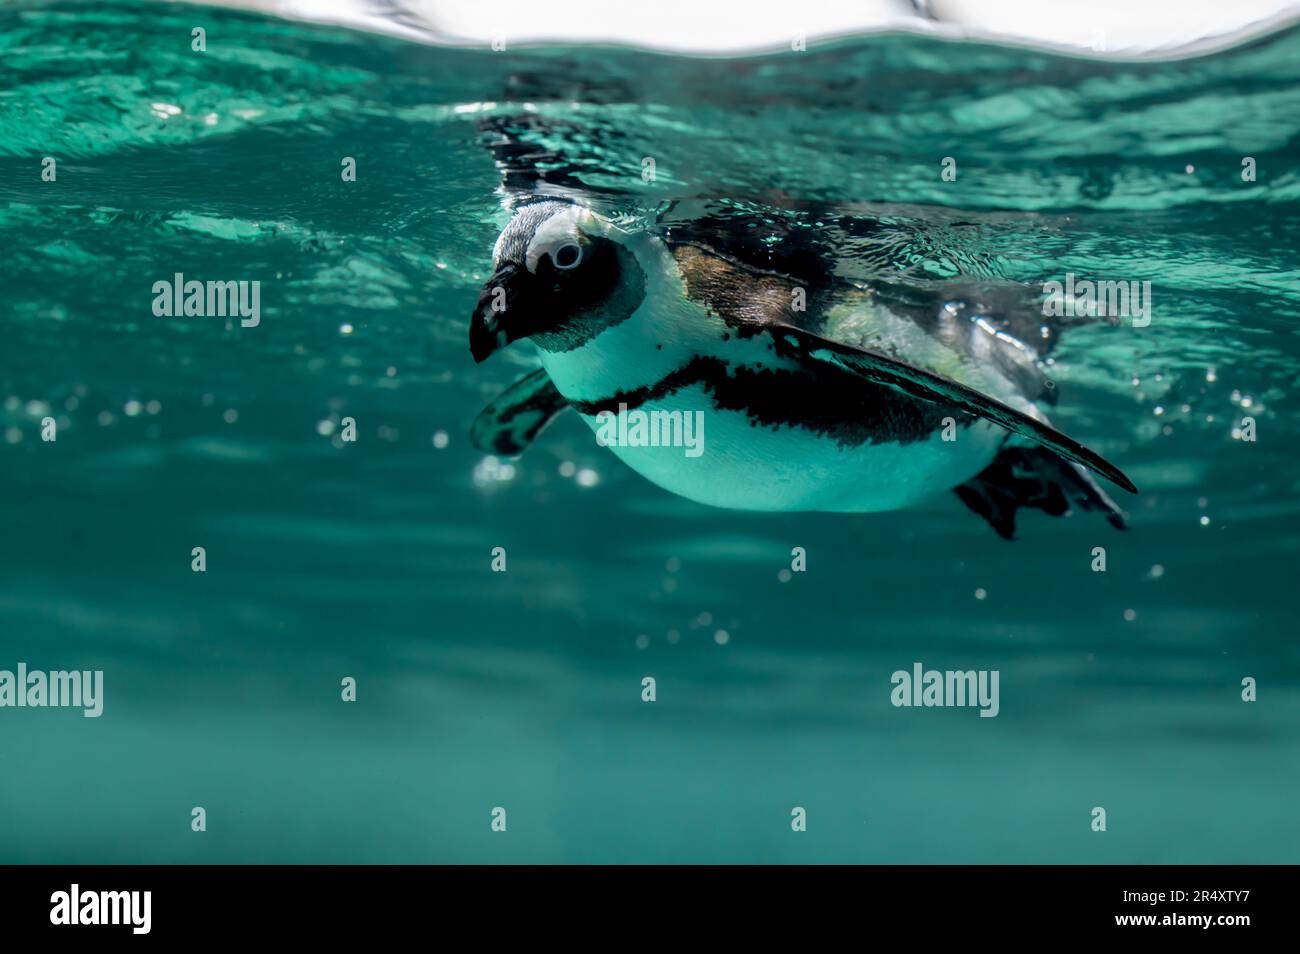 Pinguin schwimmt im Wasser mit Blasen. Afrikanischer Pinguin. Spheniscus demersus. Kap-Pinguin oder südafrikanischer Pinguin. Speicherplatz kopieren. Stockfoto